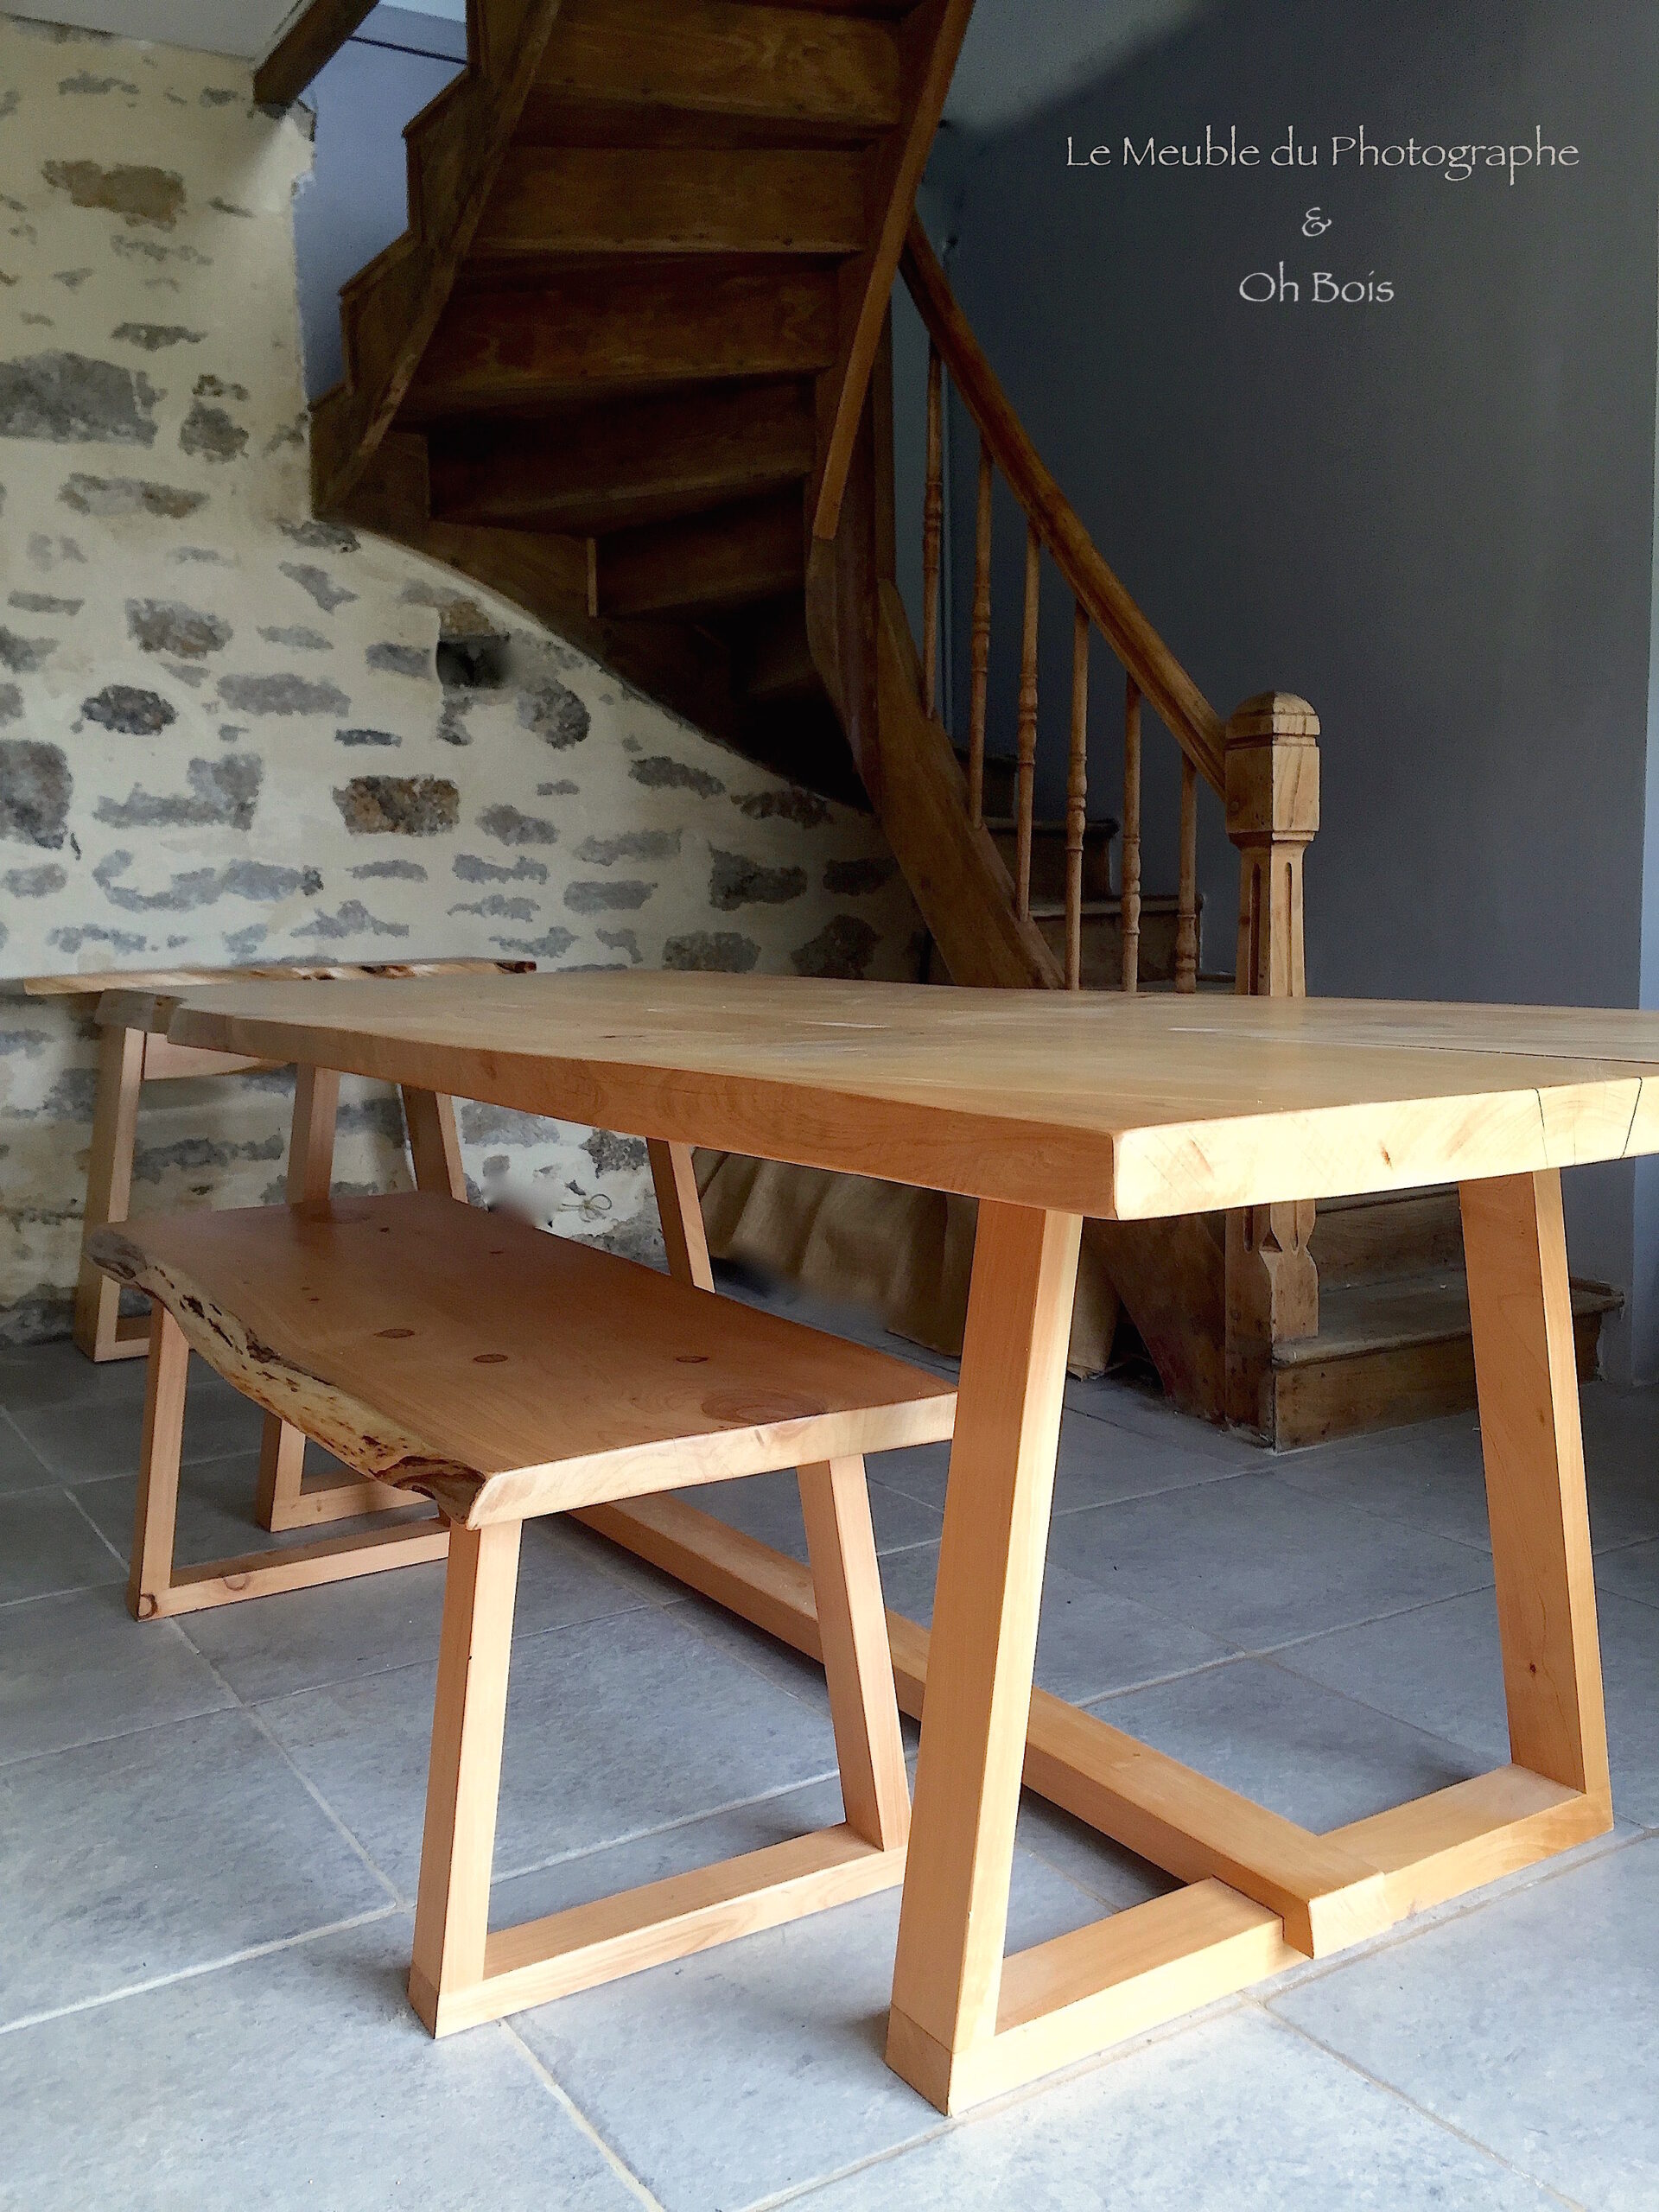 Grande table en bois massif sur mesure. Pieds triangulaires en bois. Avec son banc assorti en bois; travail artisanal mobilier en bois sur mesure.